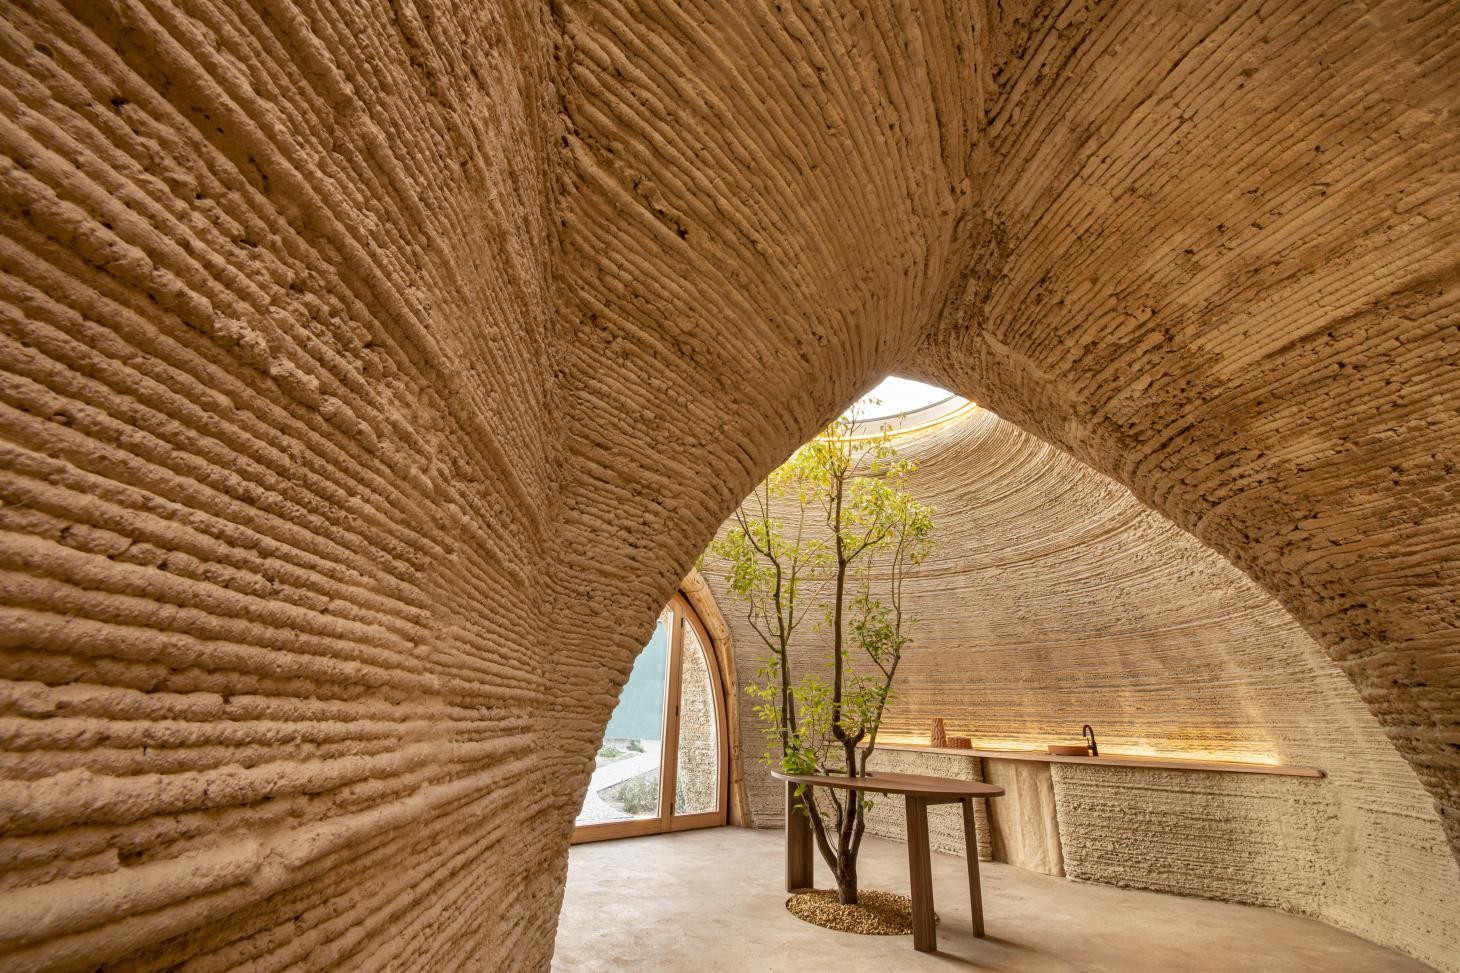 O escritório Mario Cucinella Architects construiu a primeira casa impressa em 3D do mundo feita inteiramente de terra crua, batizada de 